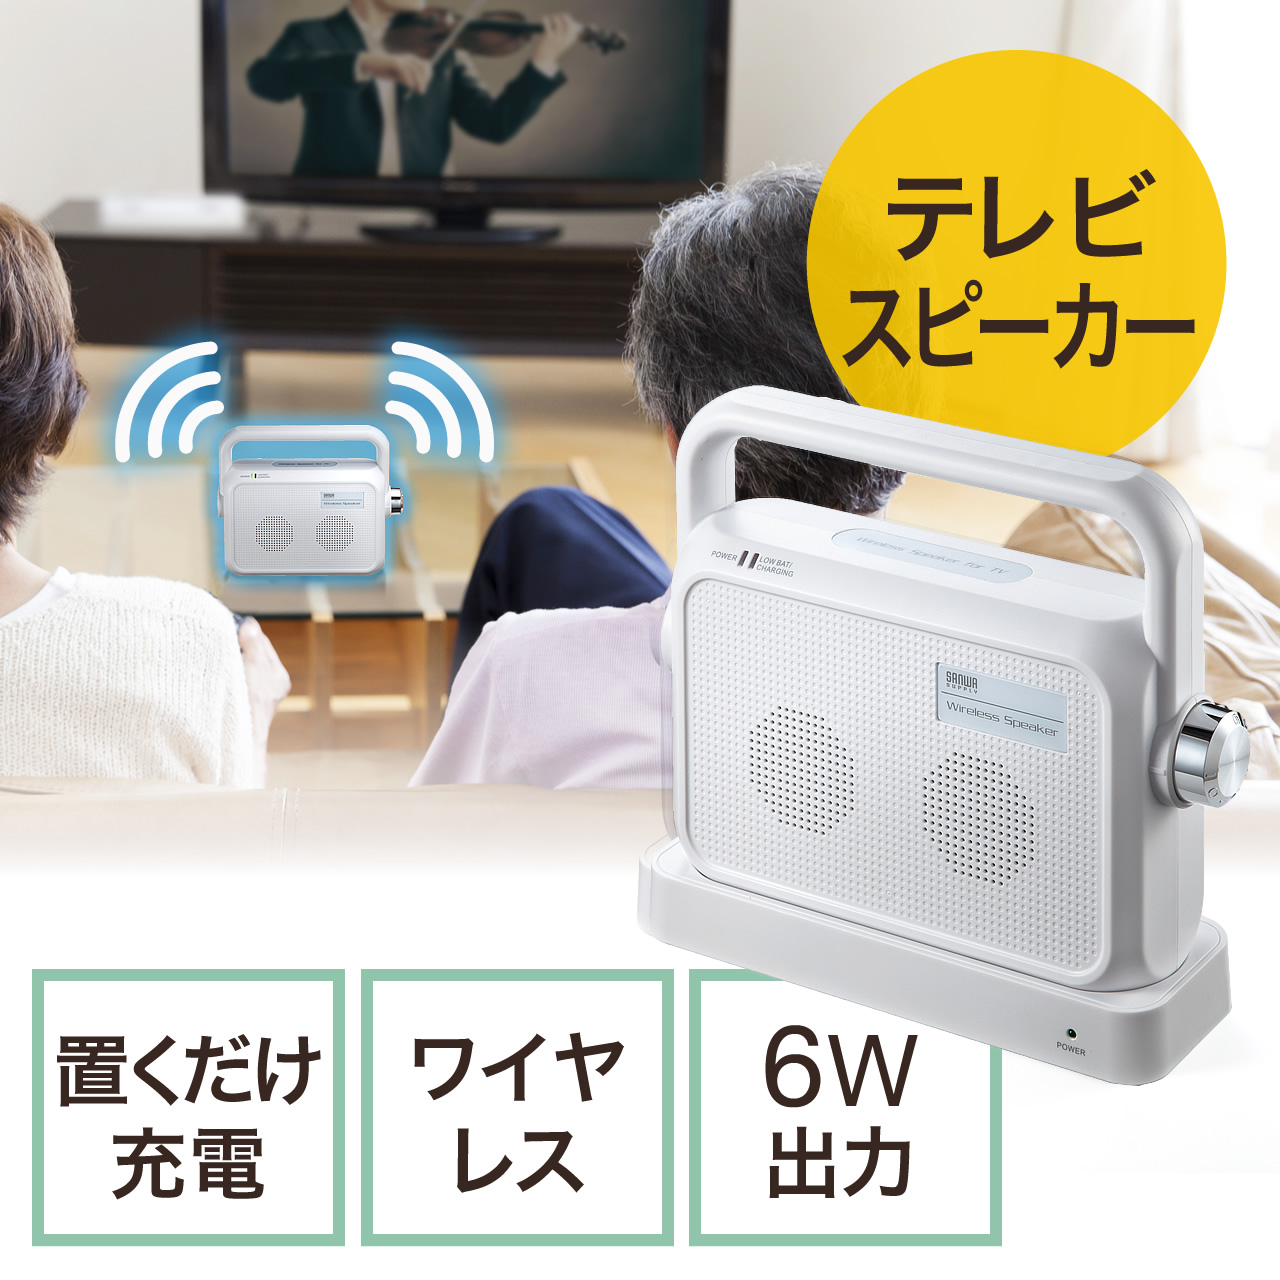 テレビ用ワイヤレススピーカー(手元スピーカー・コードレス・充電式